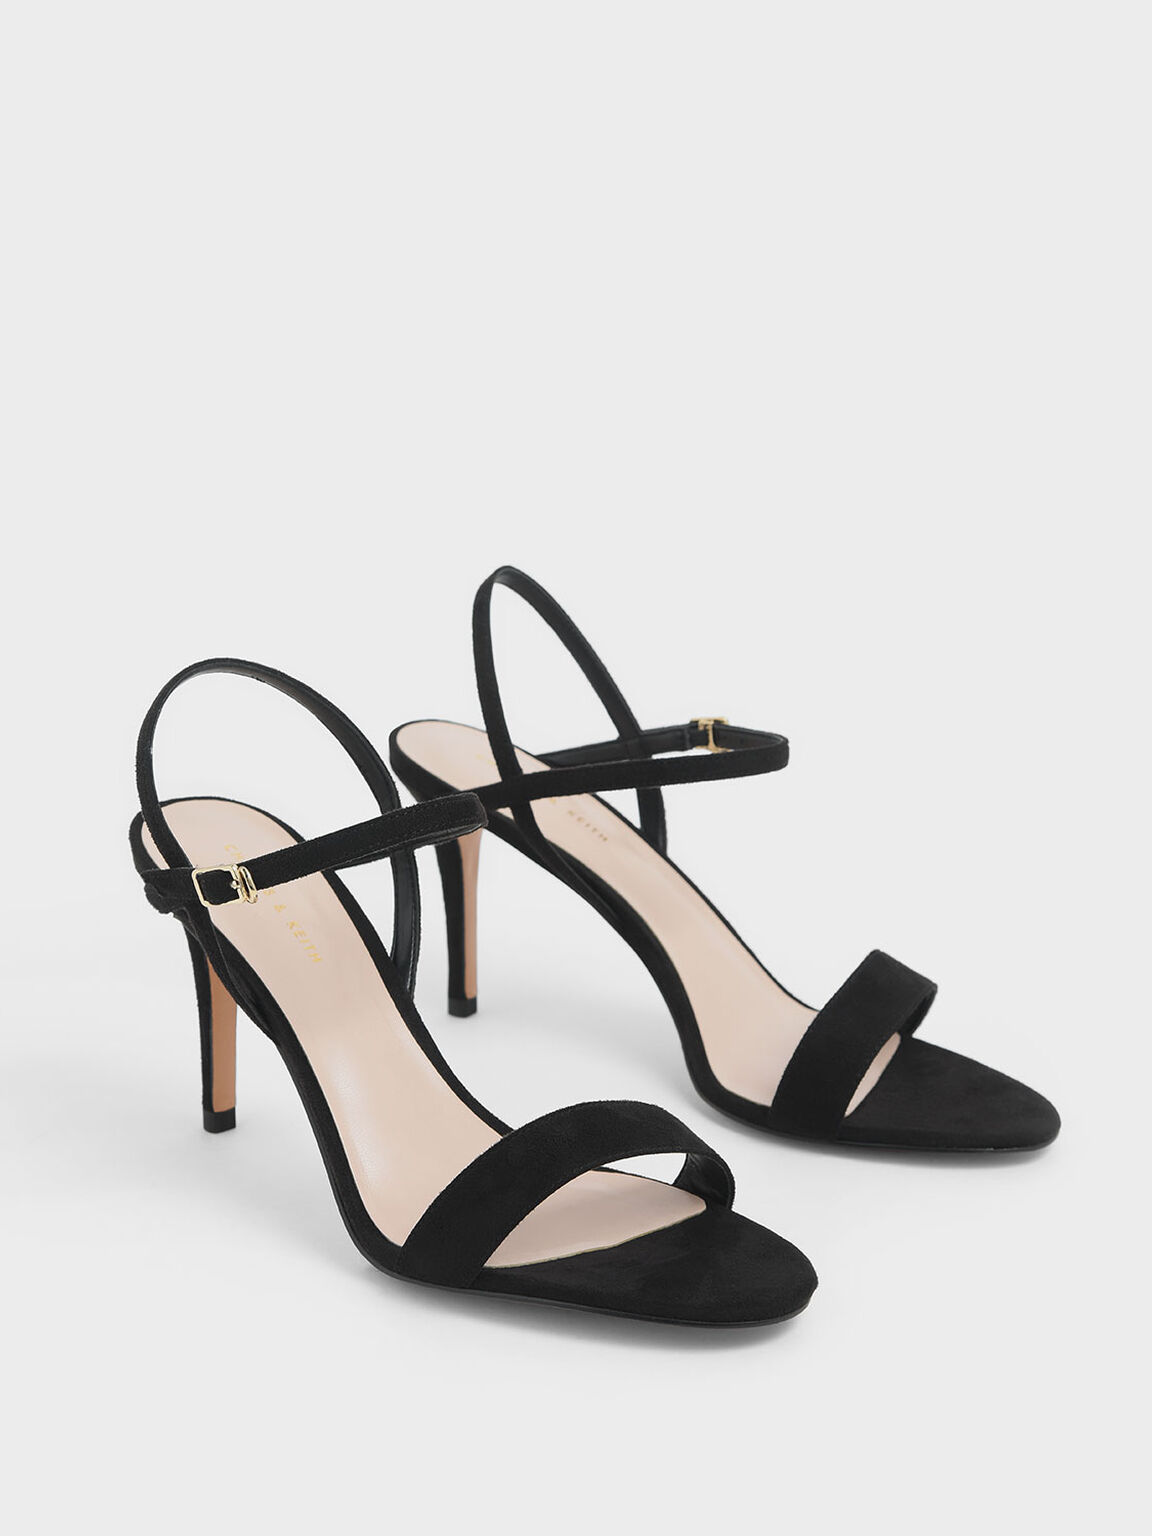 Textured Classic Stiletto Heel Sandals, Black, hi-res